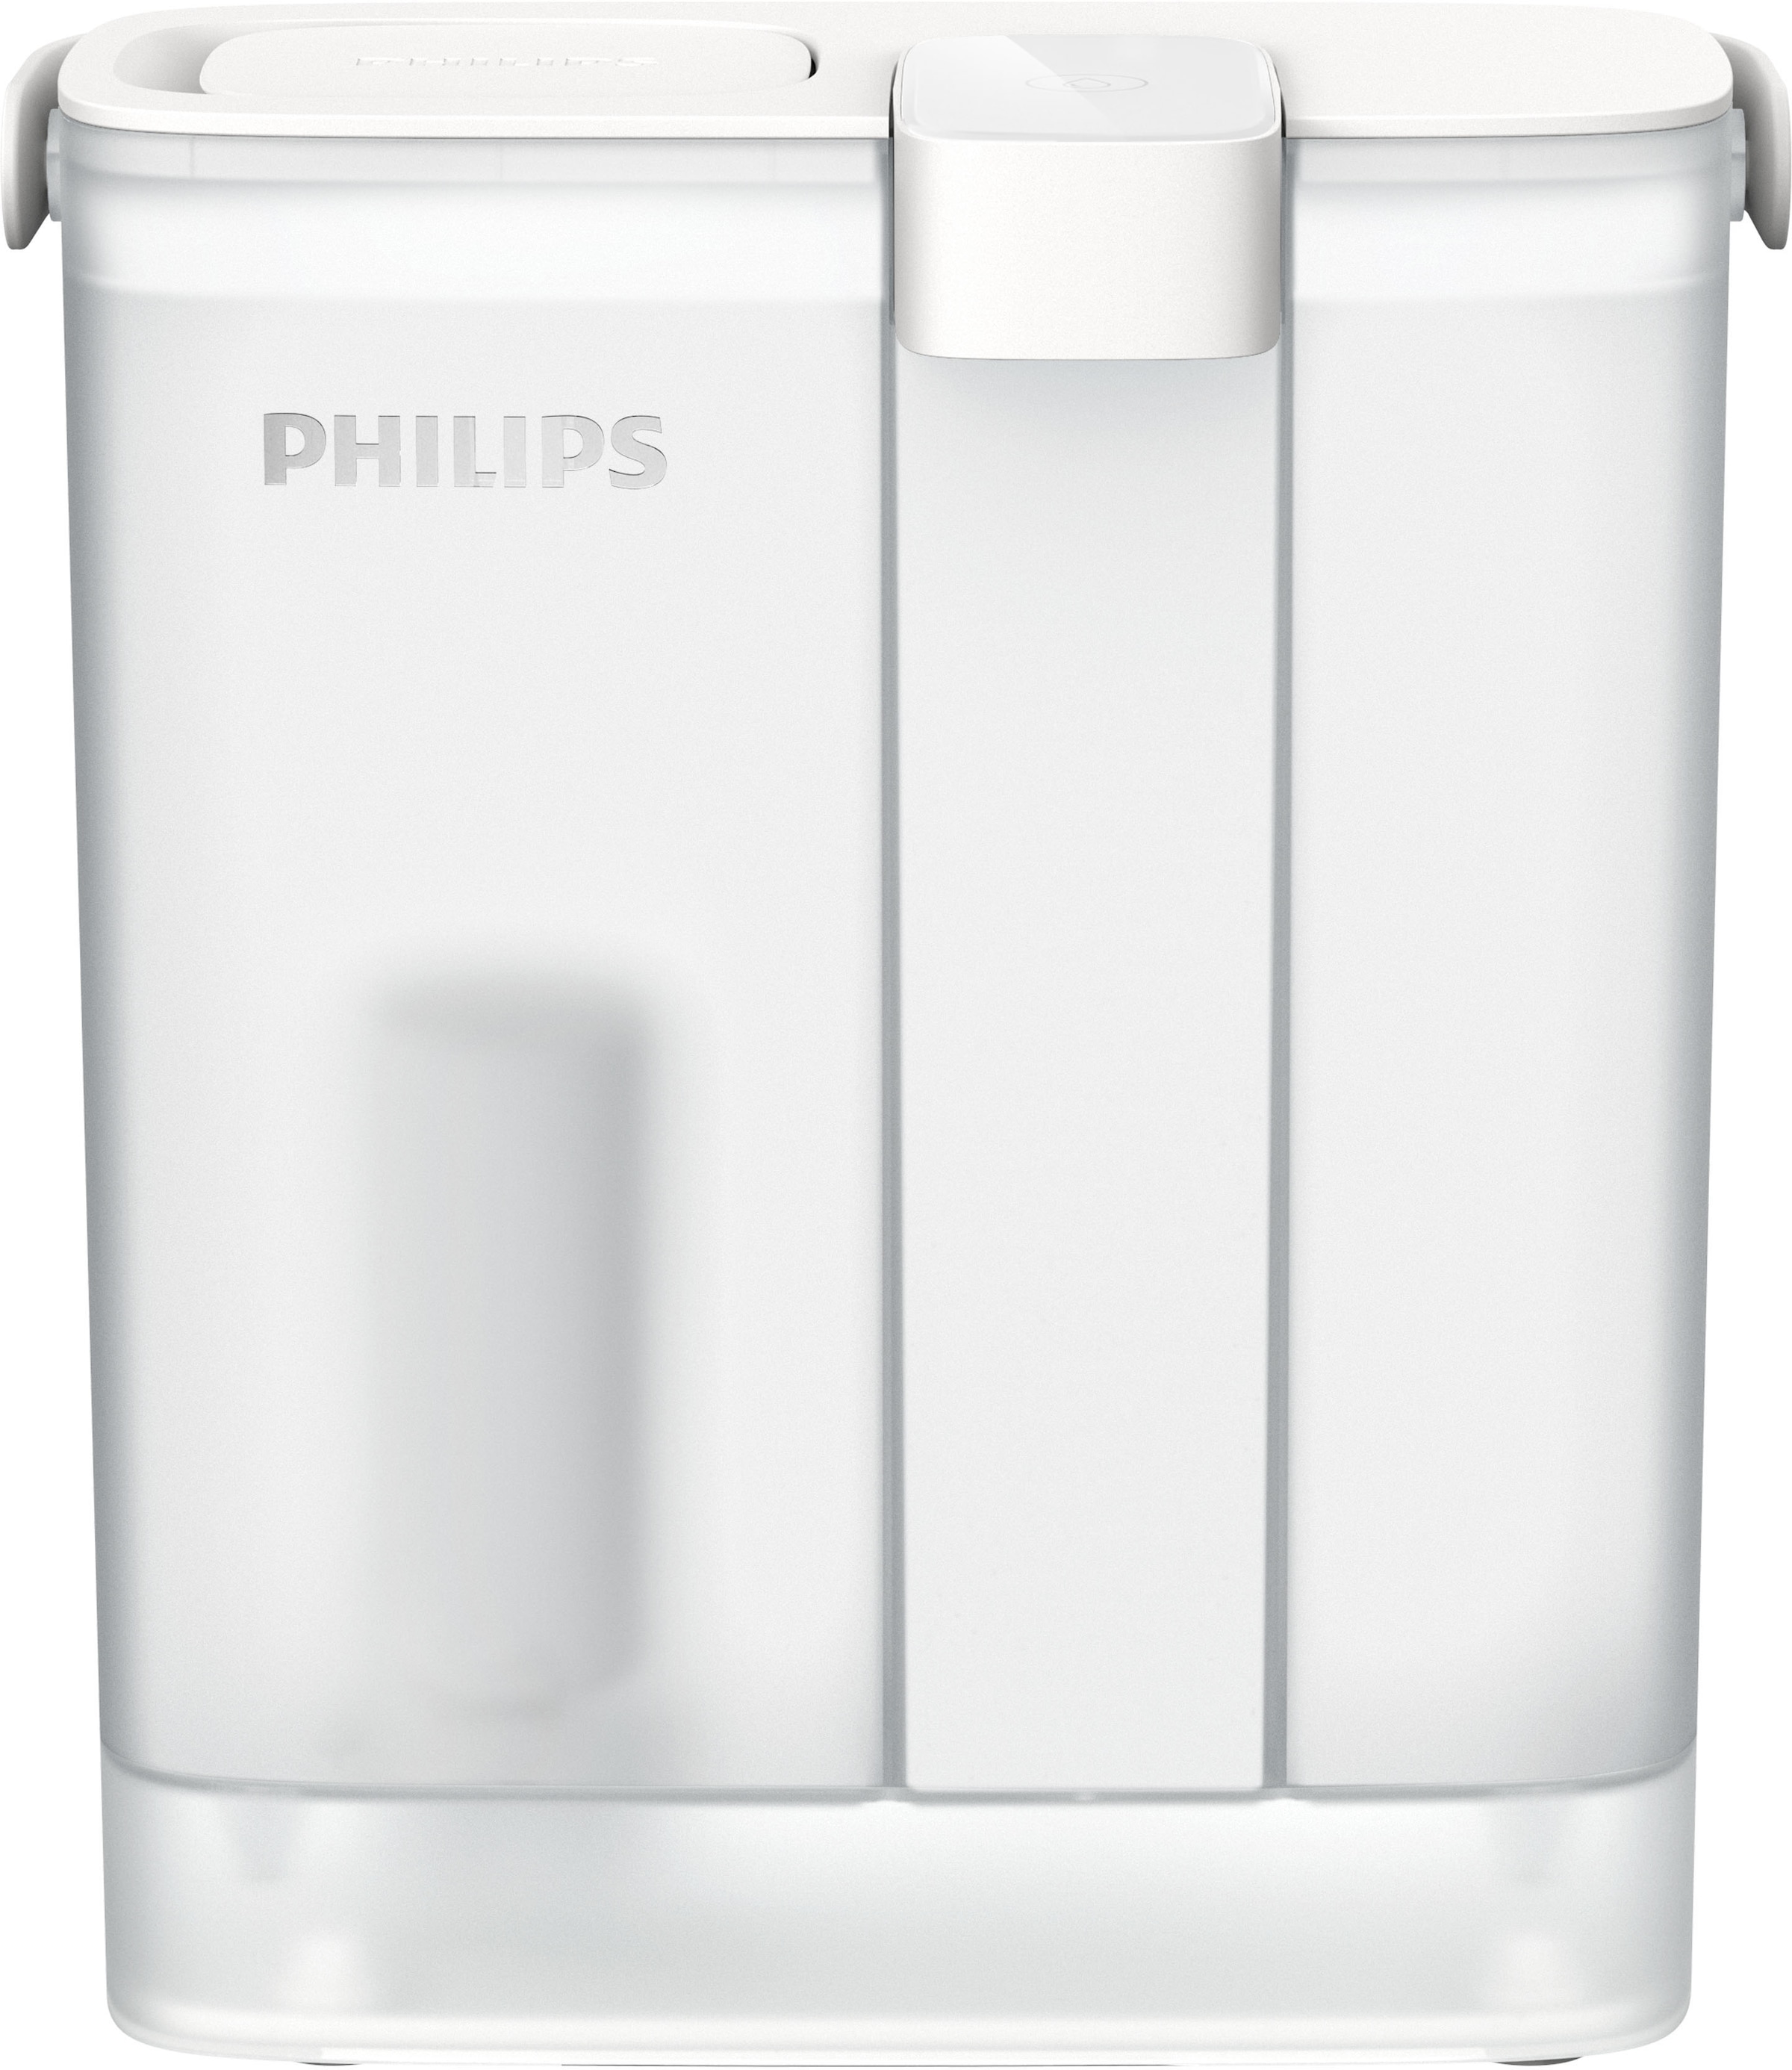 Philips Wasserfilter »(Filterkartusche für Sofort-Wasserfilter)«, reduziert ua. Chlor, Blei, Pestizide, Mikroplastik,  3 l Fassungsvermögen, 1 l/min schneller Durchfluss, wiederaufladbar über USB-C